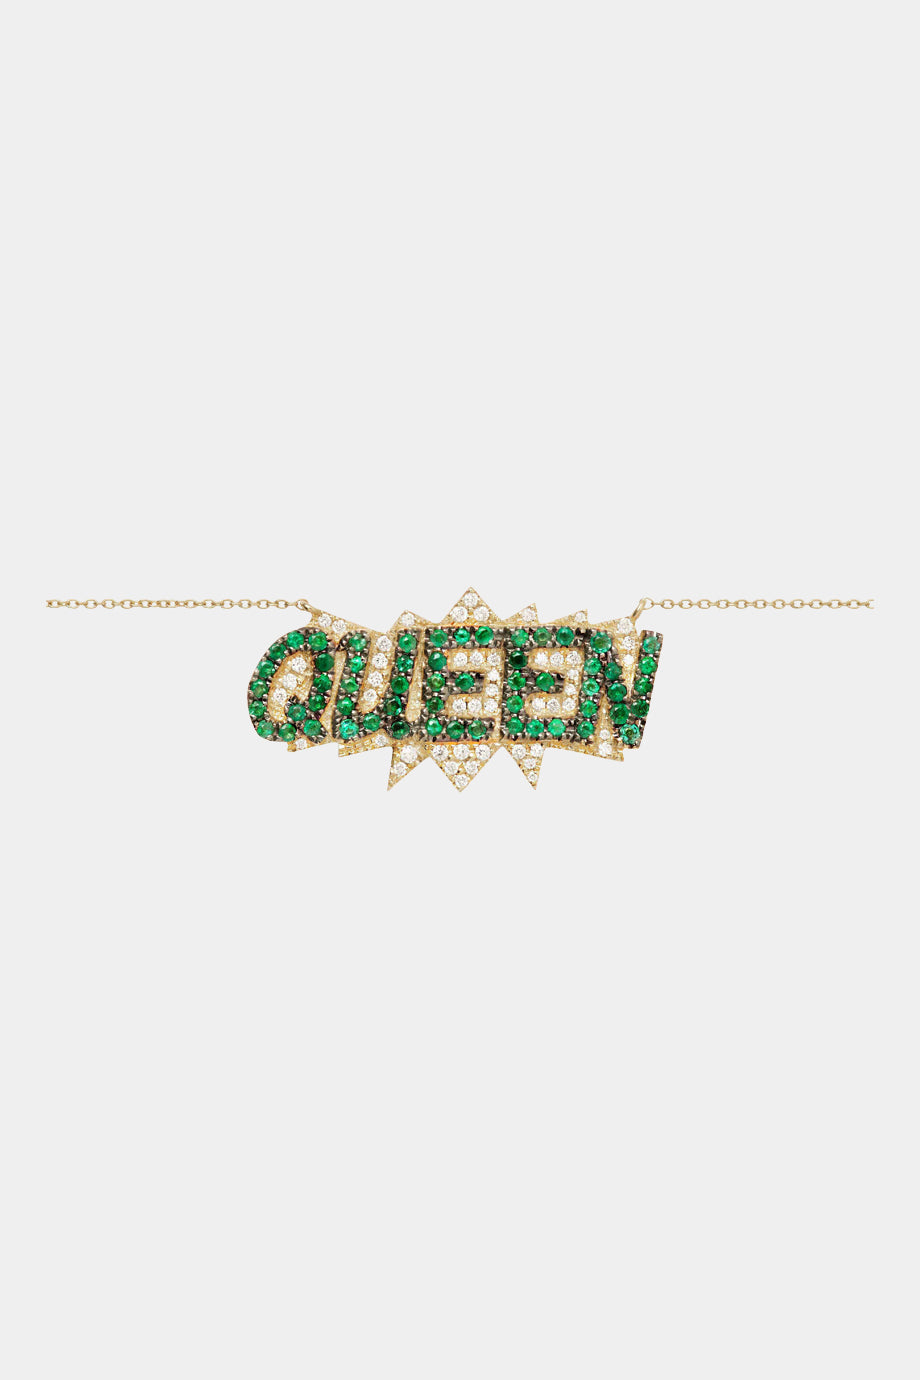 Queen Pop Art Necklace In Green Emeralds